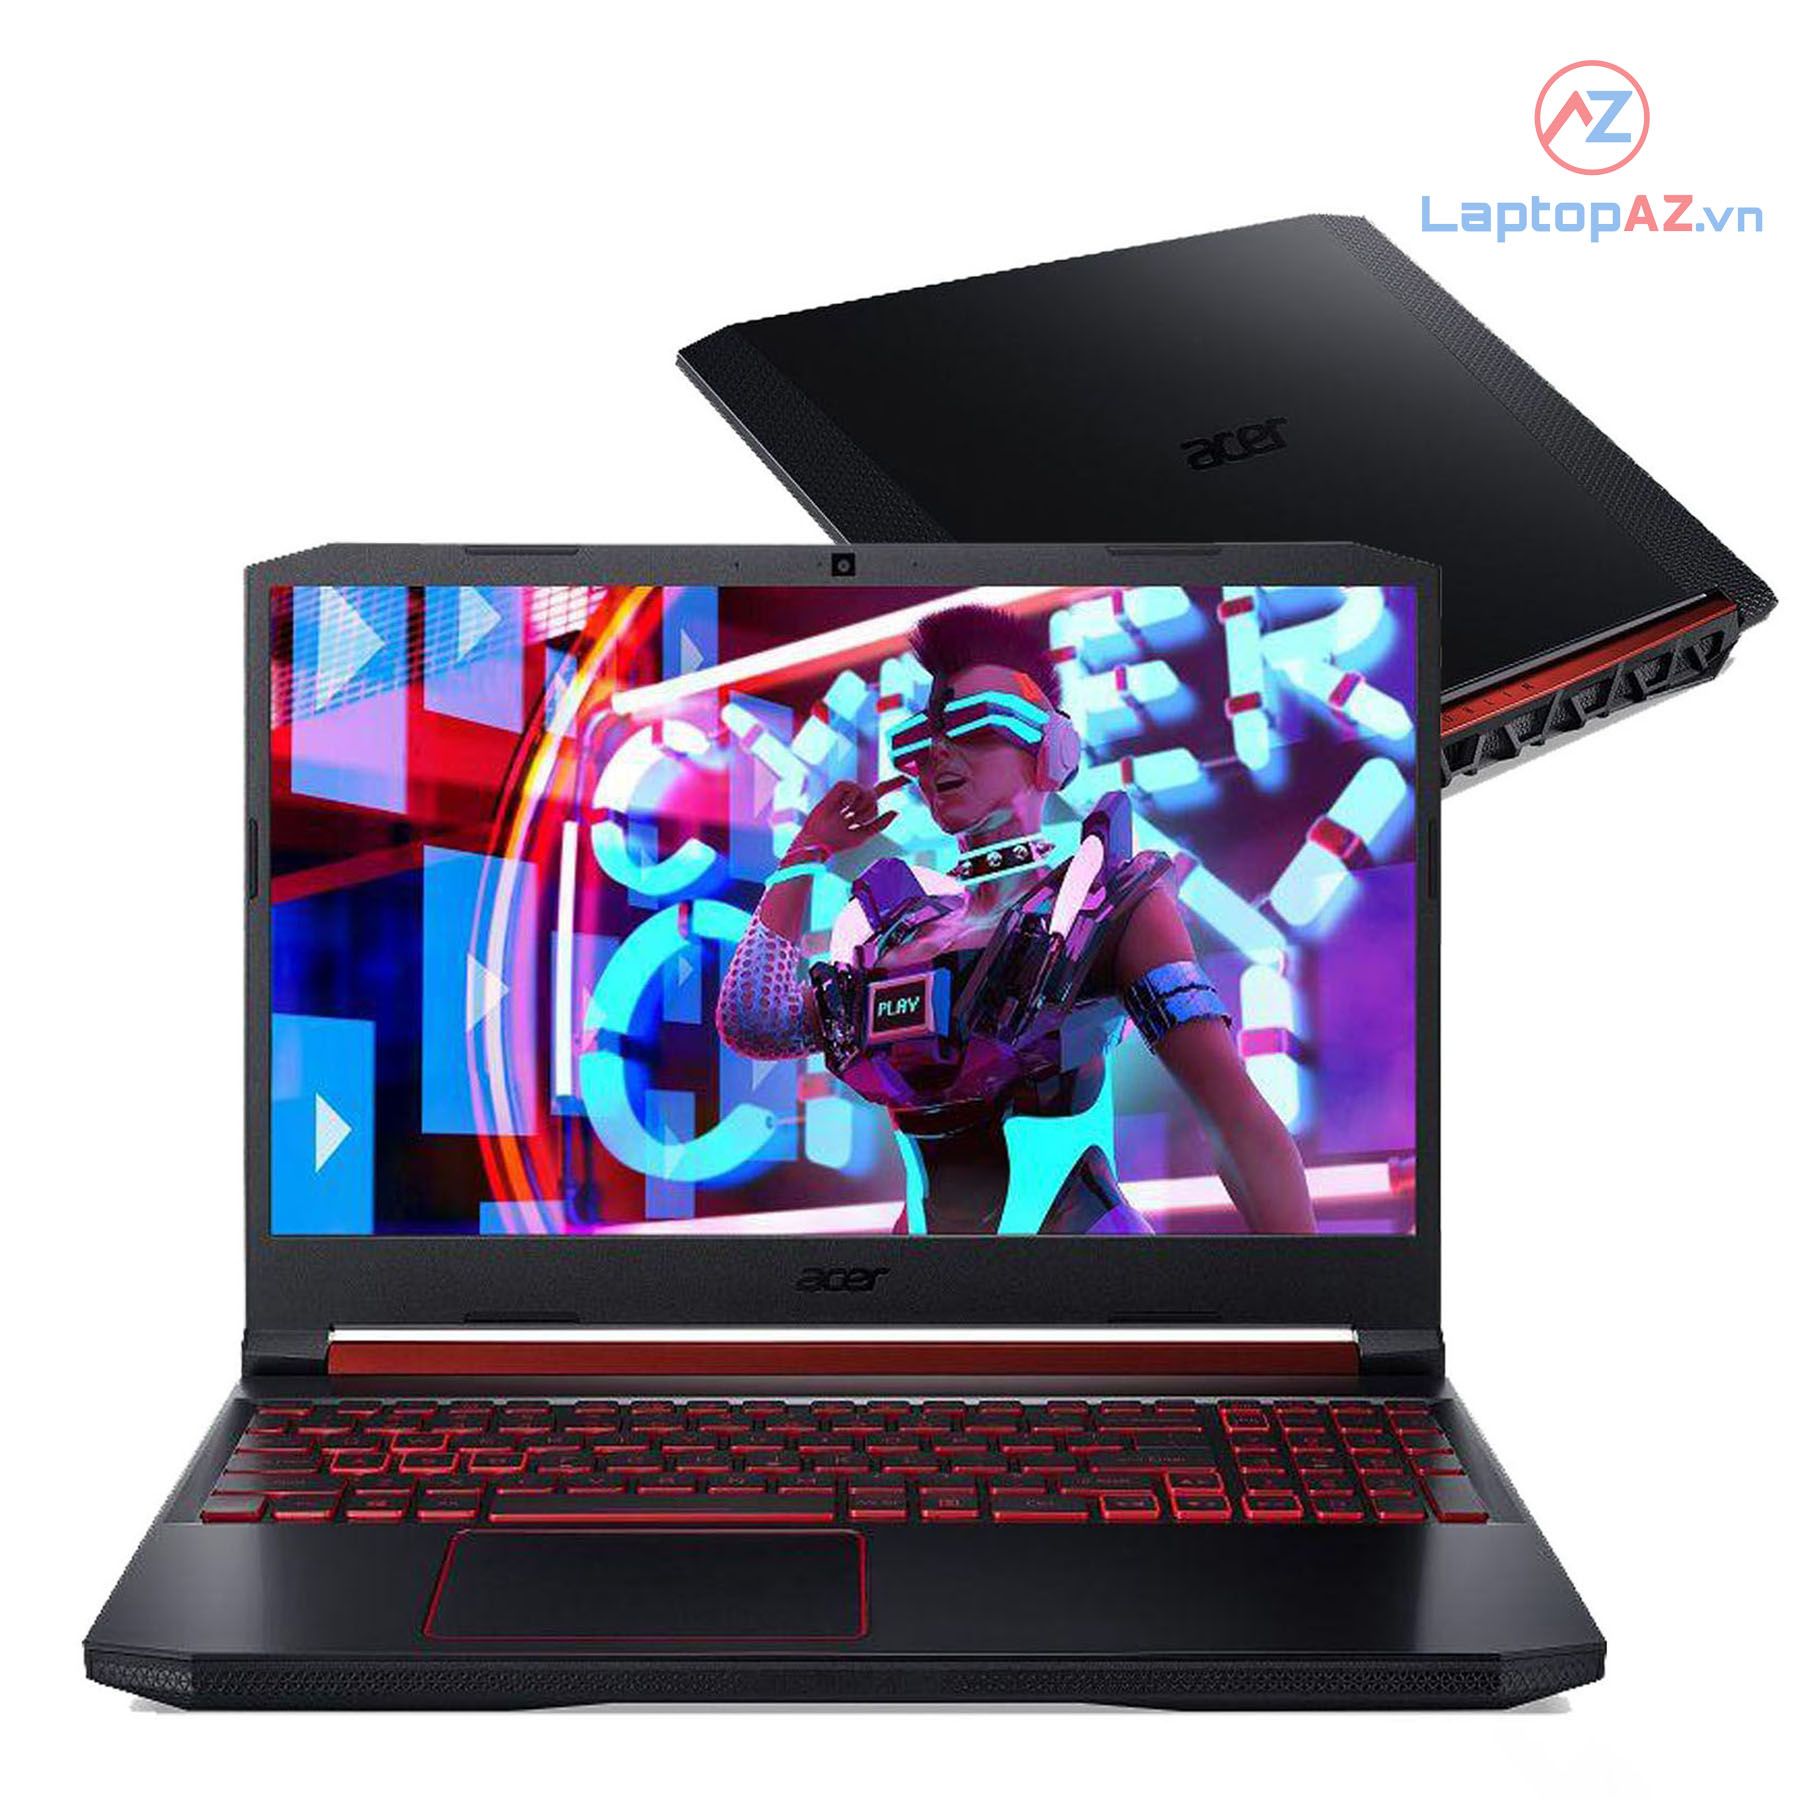 Laptop Acer Nitro 5 AN515-52-75FT (Core i7-8750H, 8GB, 1T+ 128GB M2, VGA 4GB NVIDIA GTX 1050Ti, 15.6 inch, FHD IPS)